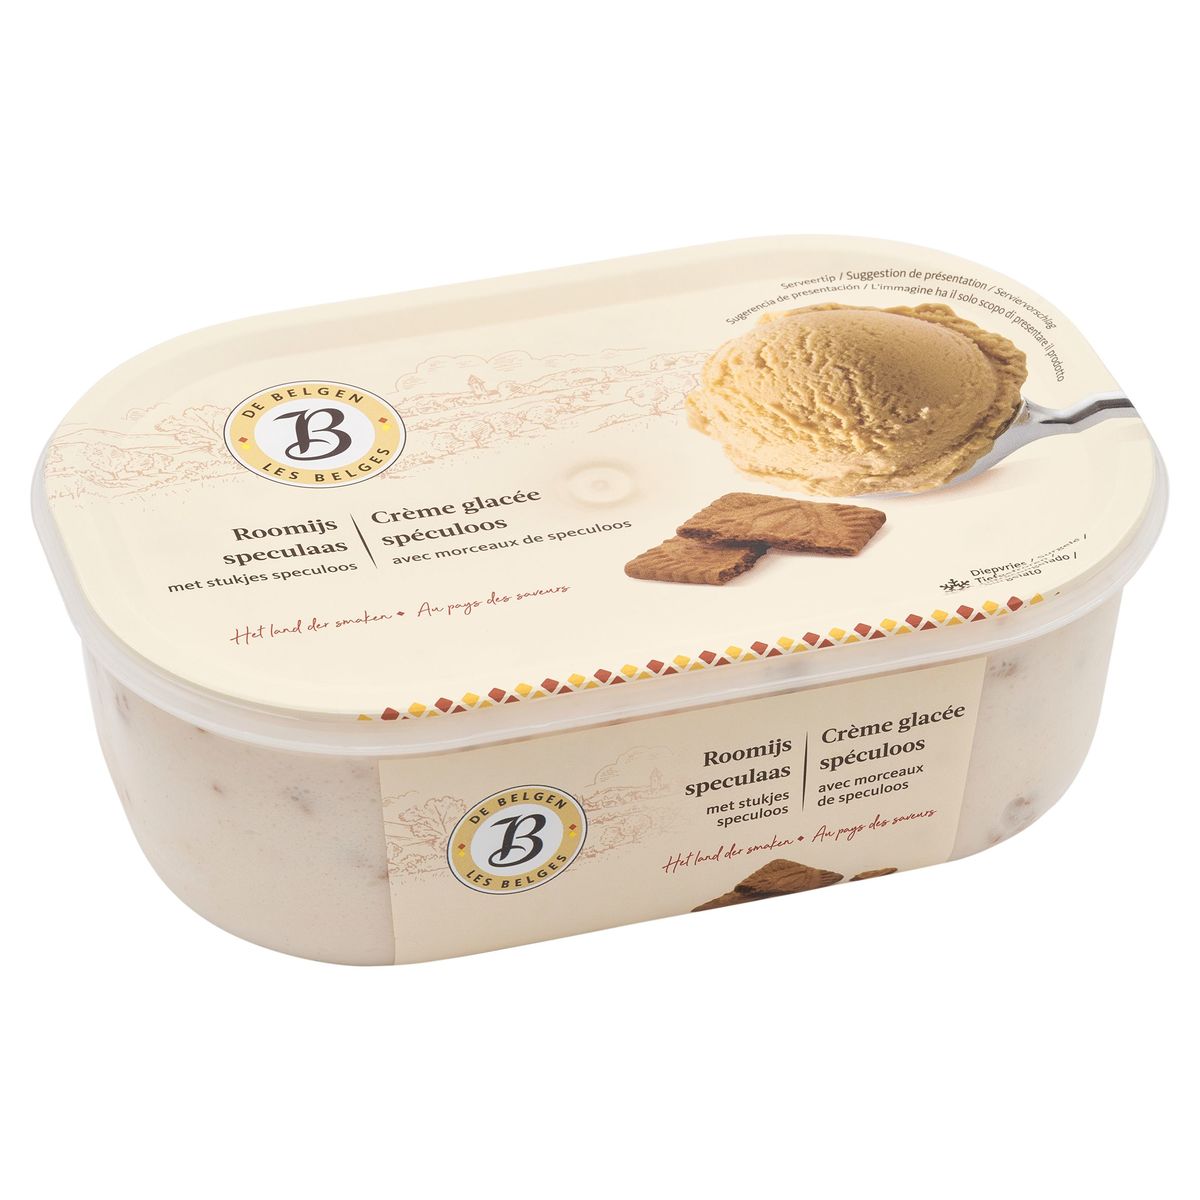 Les Belges Crème Glacée Spéculoos avec Morceaux de Speculoos 500 g